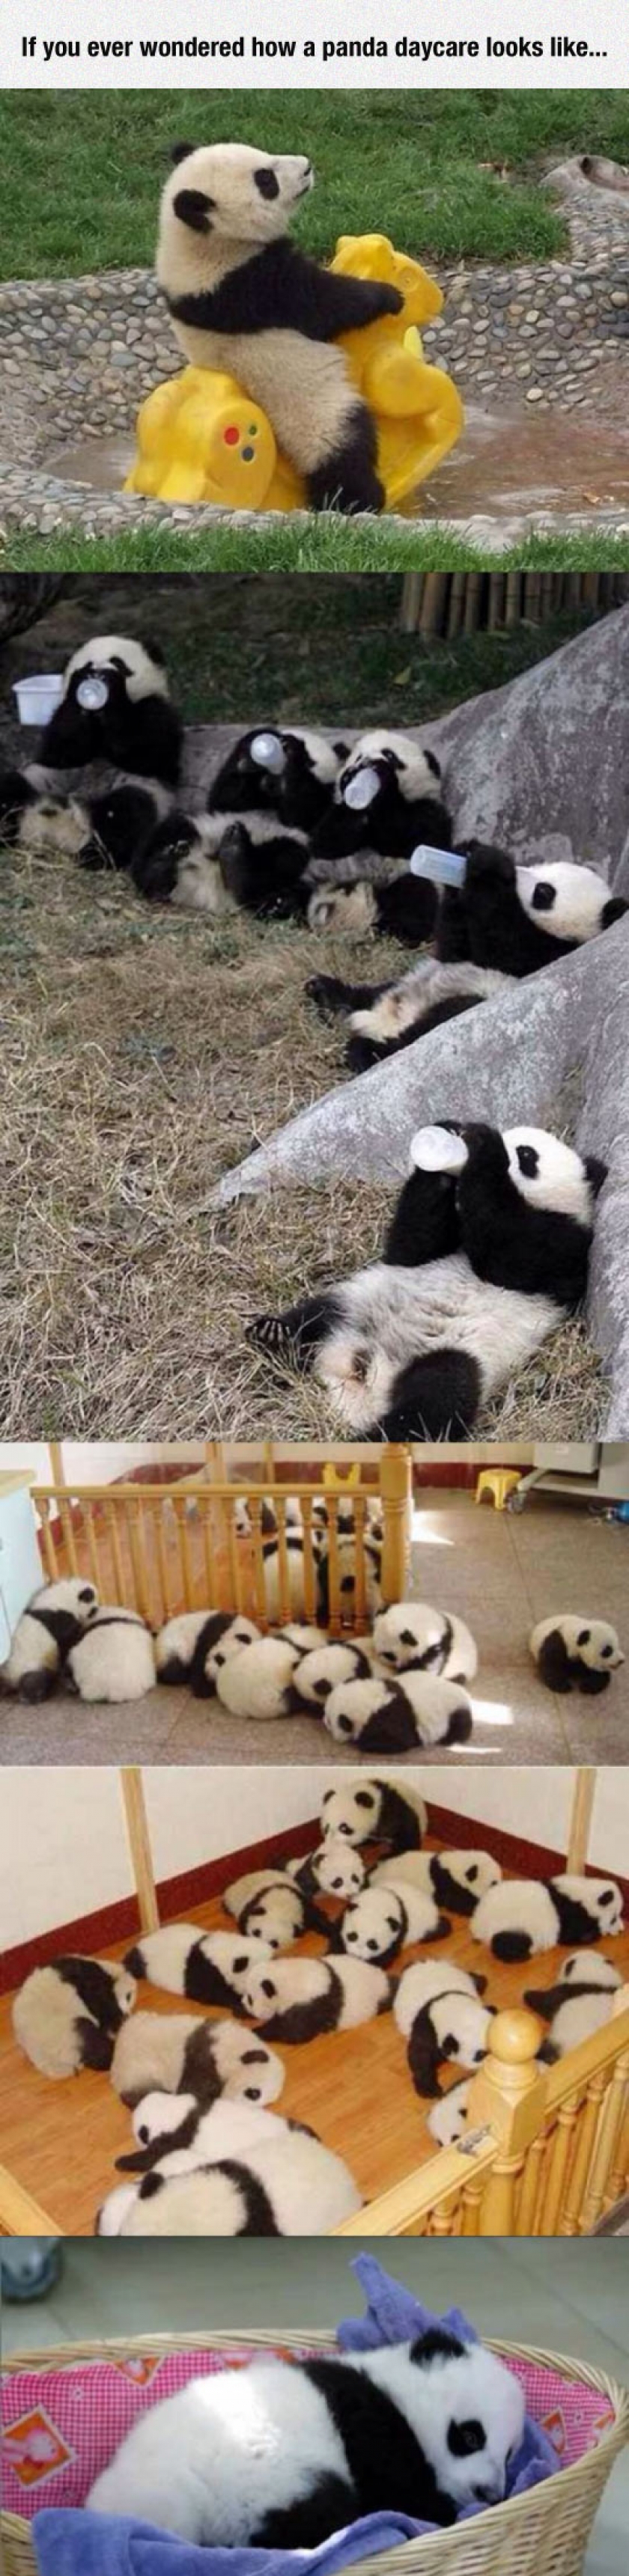 Panda Daycare